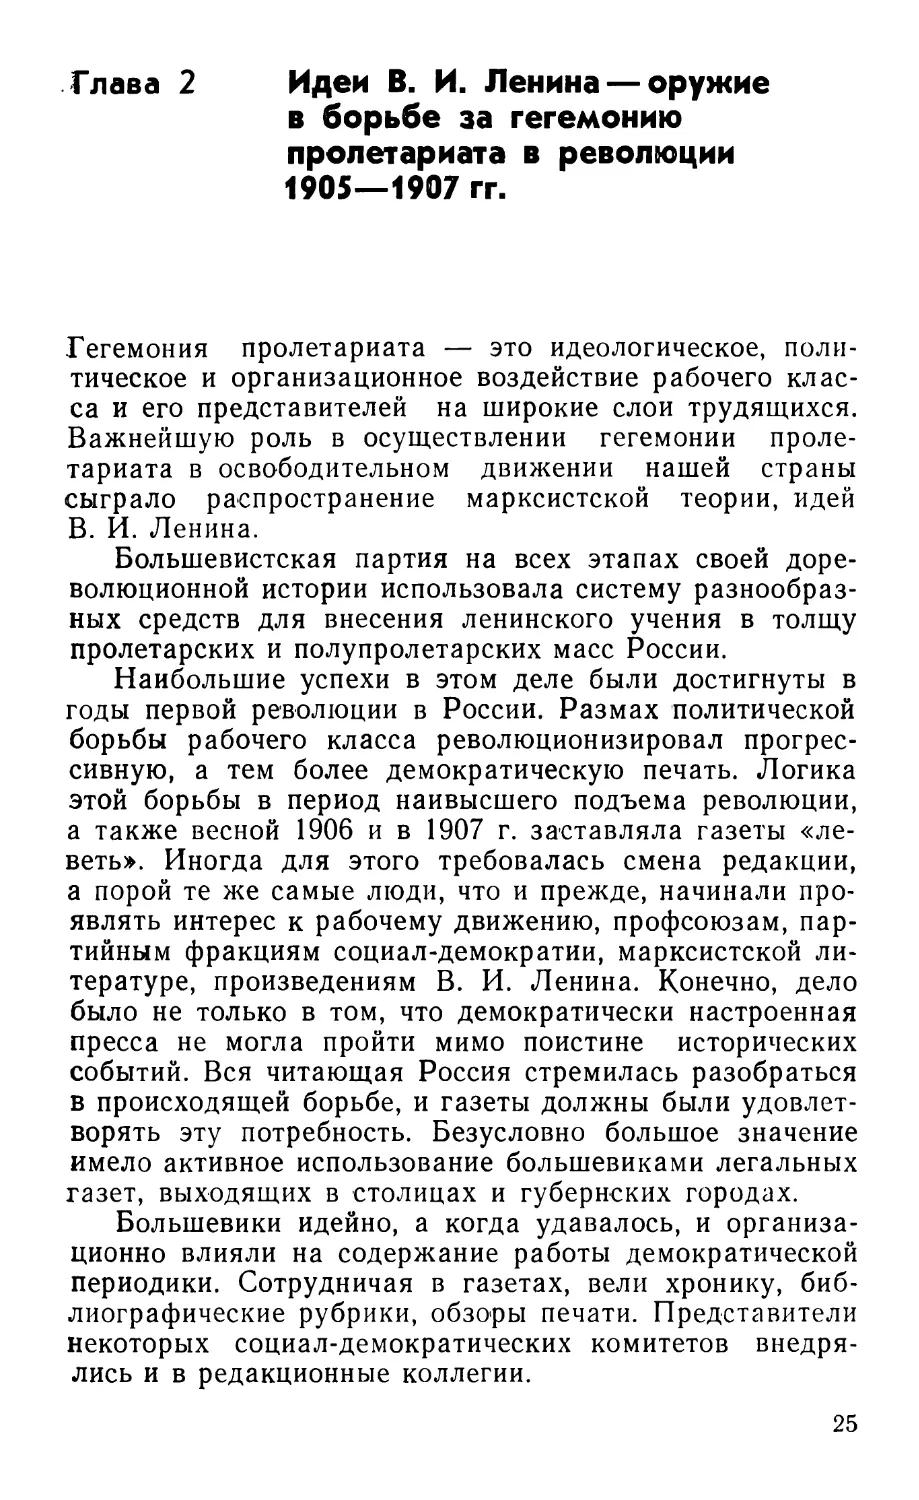 Глава 2. Идеи В. И. Ленина — оружие в борьбе за гегемонию пролетариата в революции 1905—1907 гг